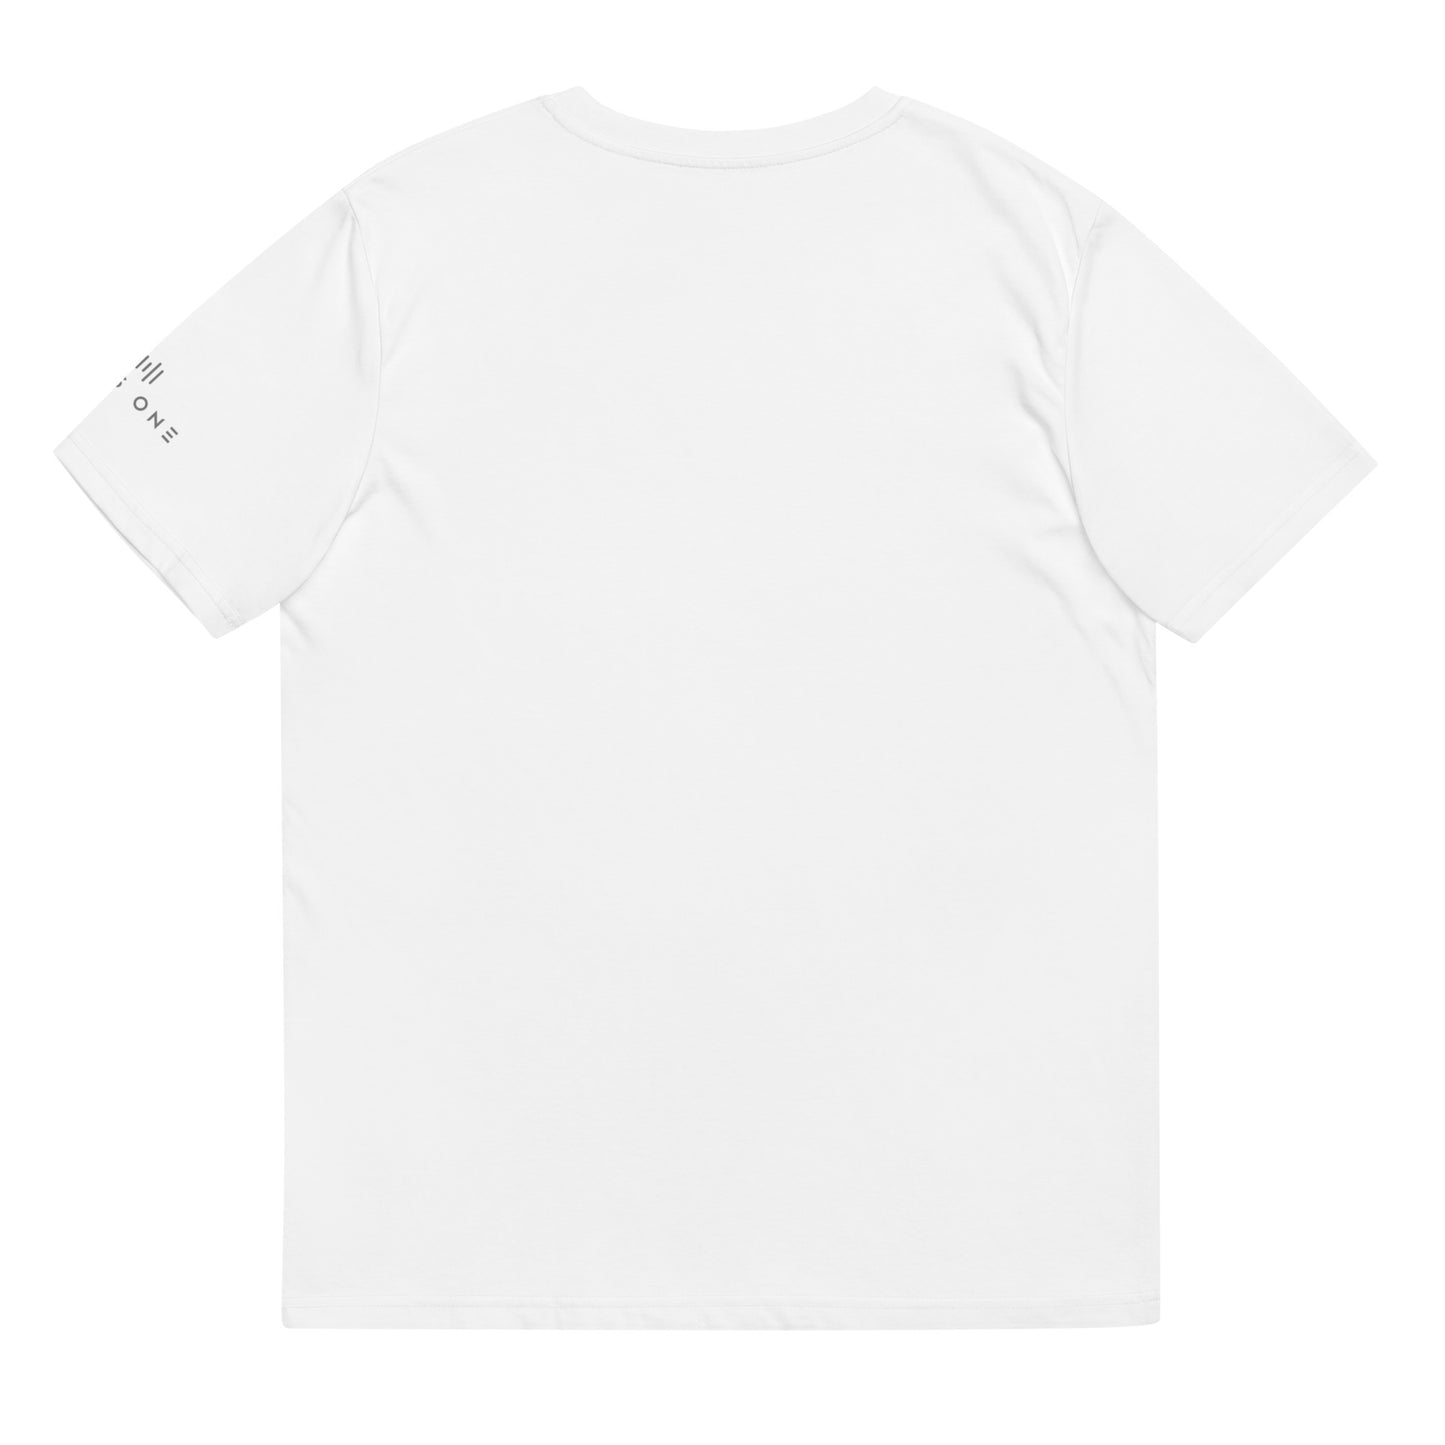 Tribe Mic-e (v2) Unisex organic cotton t-shirt